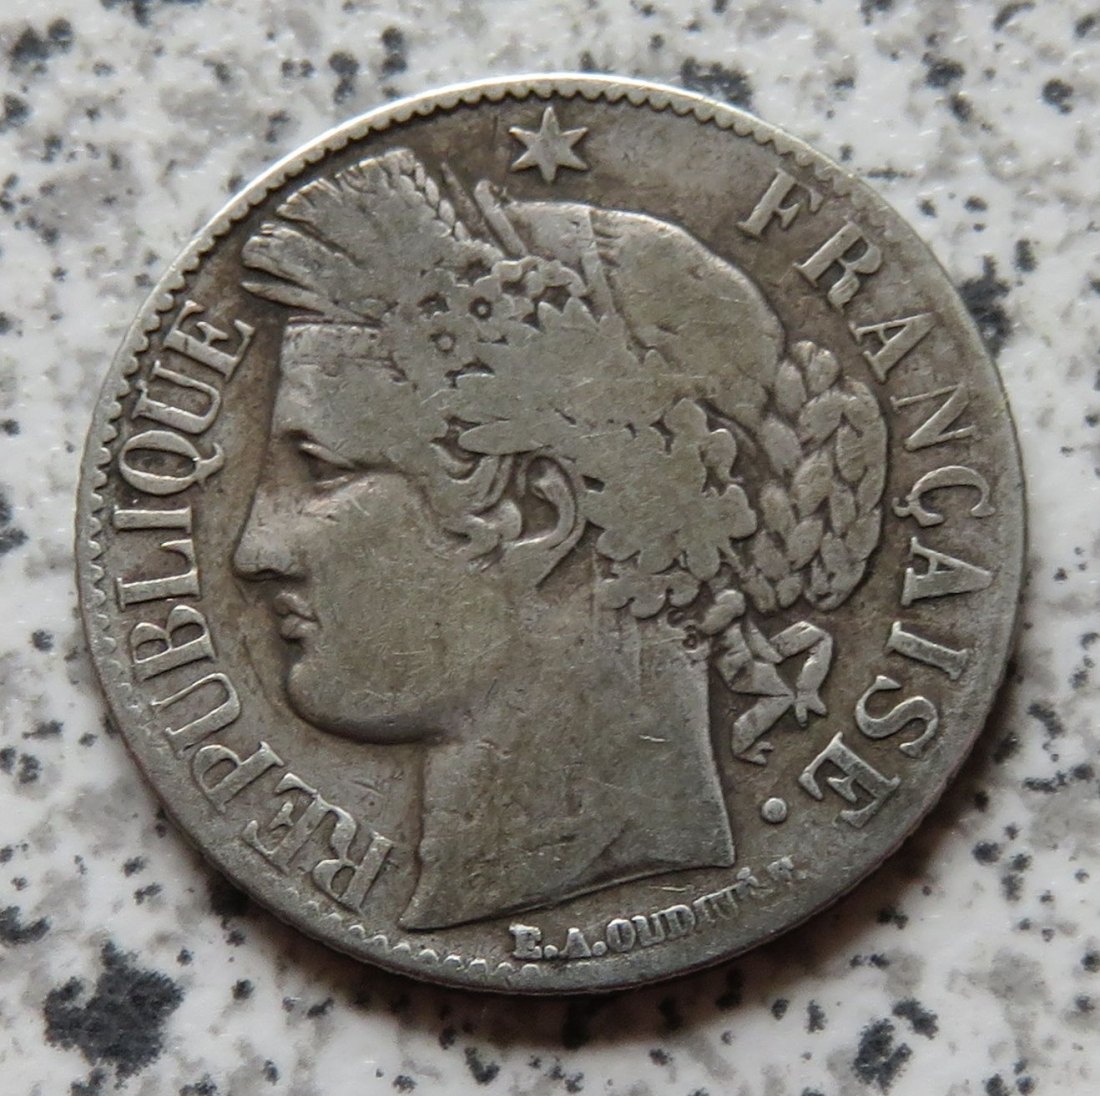  Frankreich 1 Franc 1887 A   